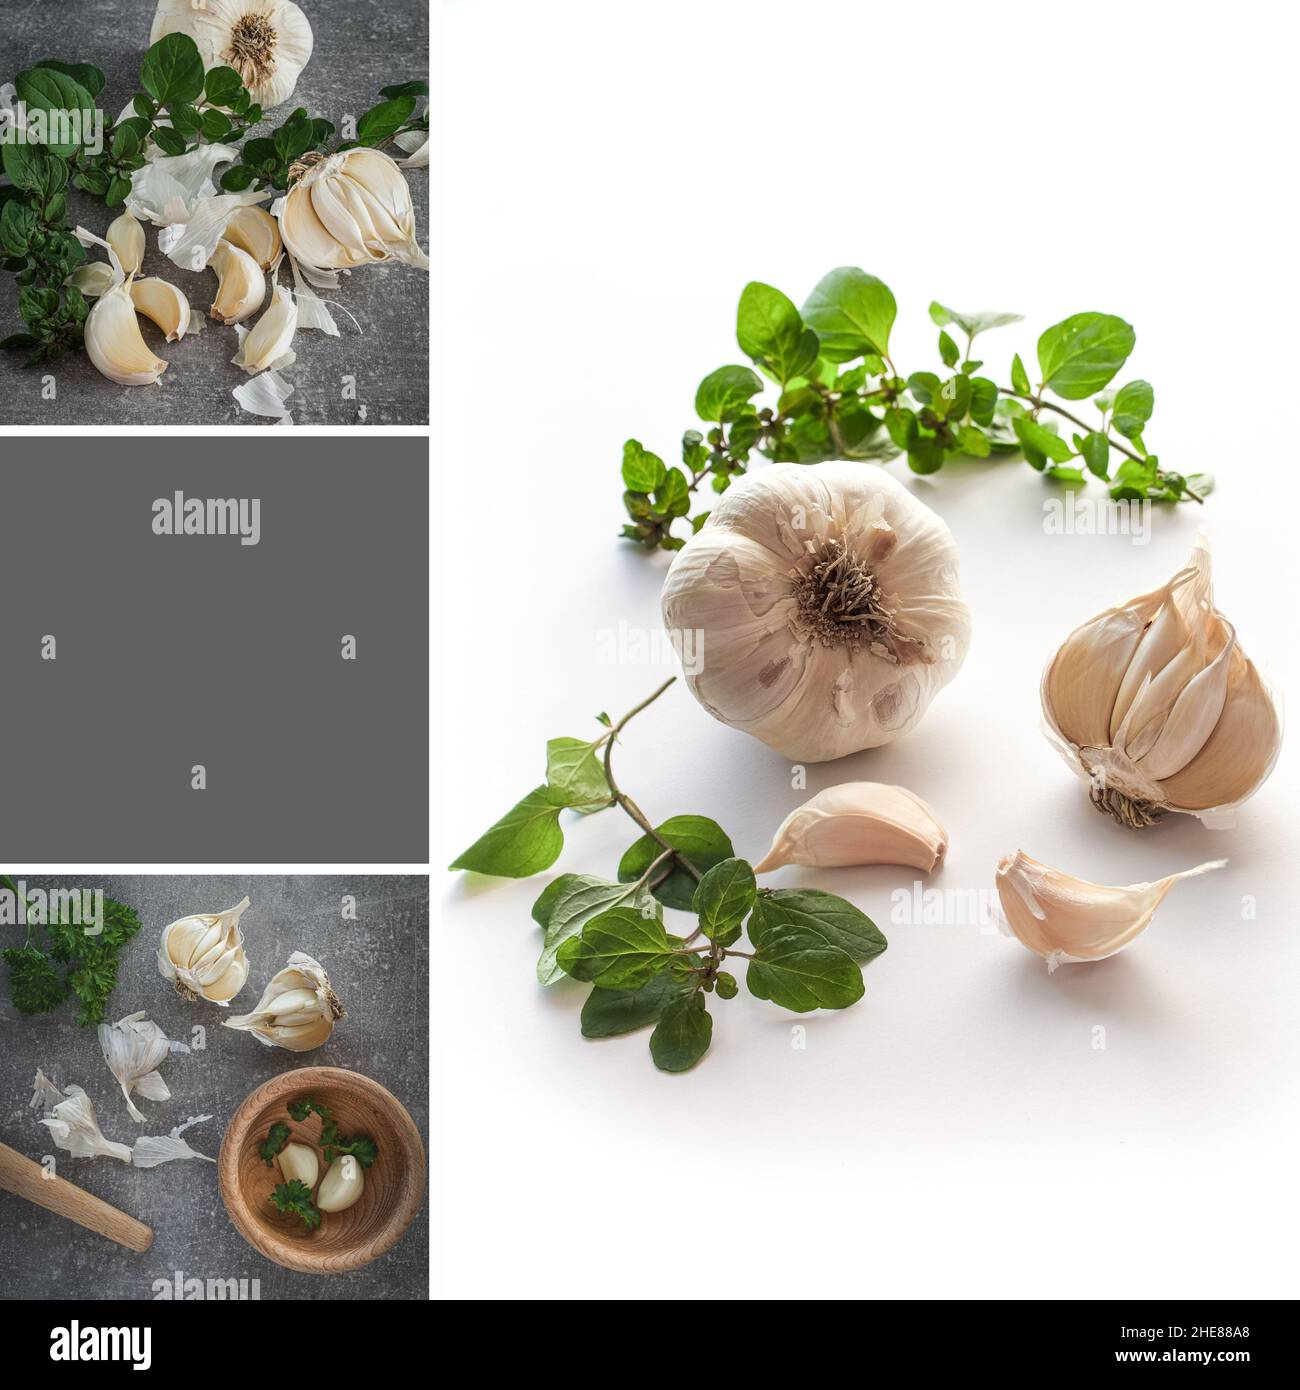 Collage di tre immagini - chiodi di garofano e bulbi aglio - allium sativum. Mood board. Modello di social media con spazio per la copia. Foto Stock